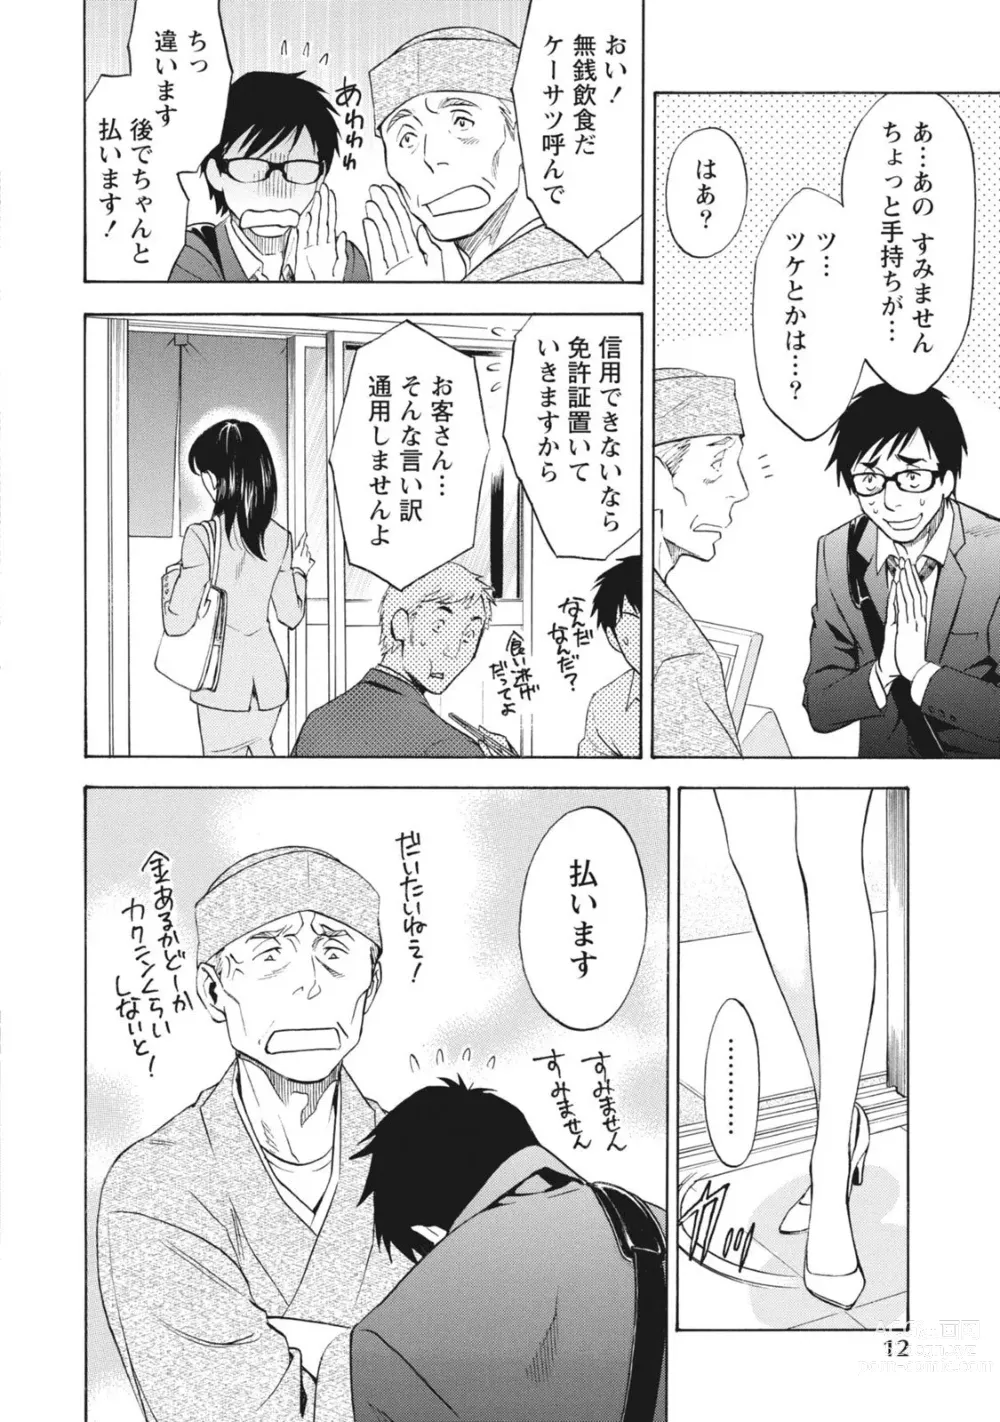 Page 12 of manga Nisekon!